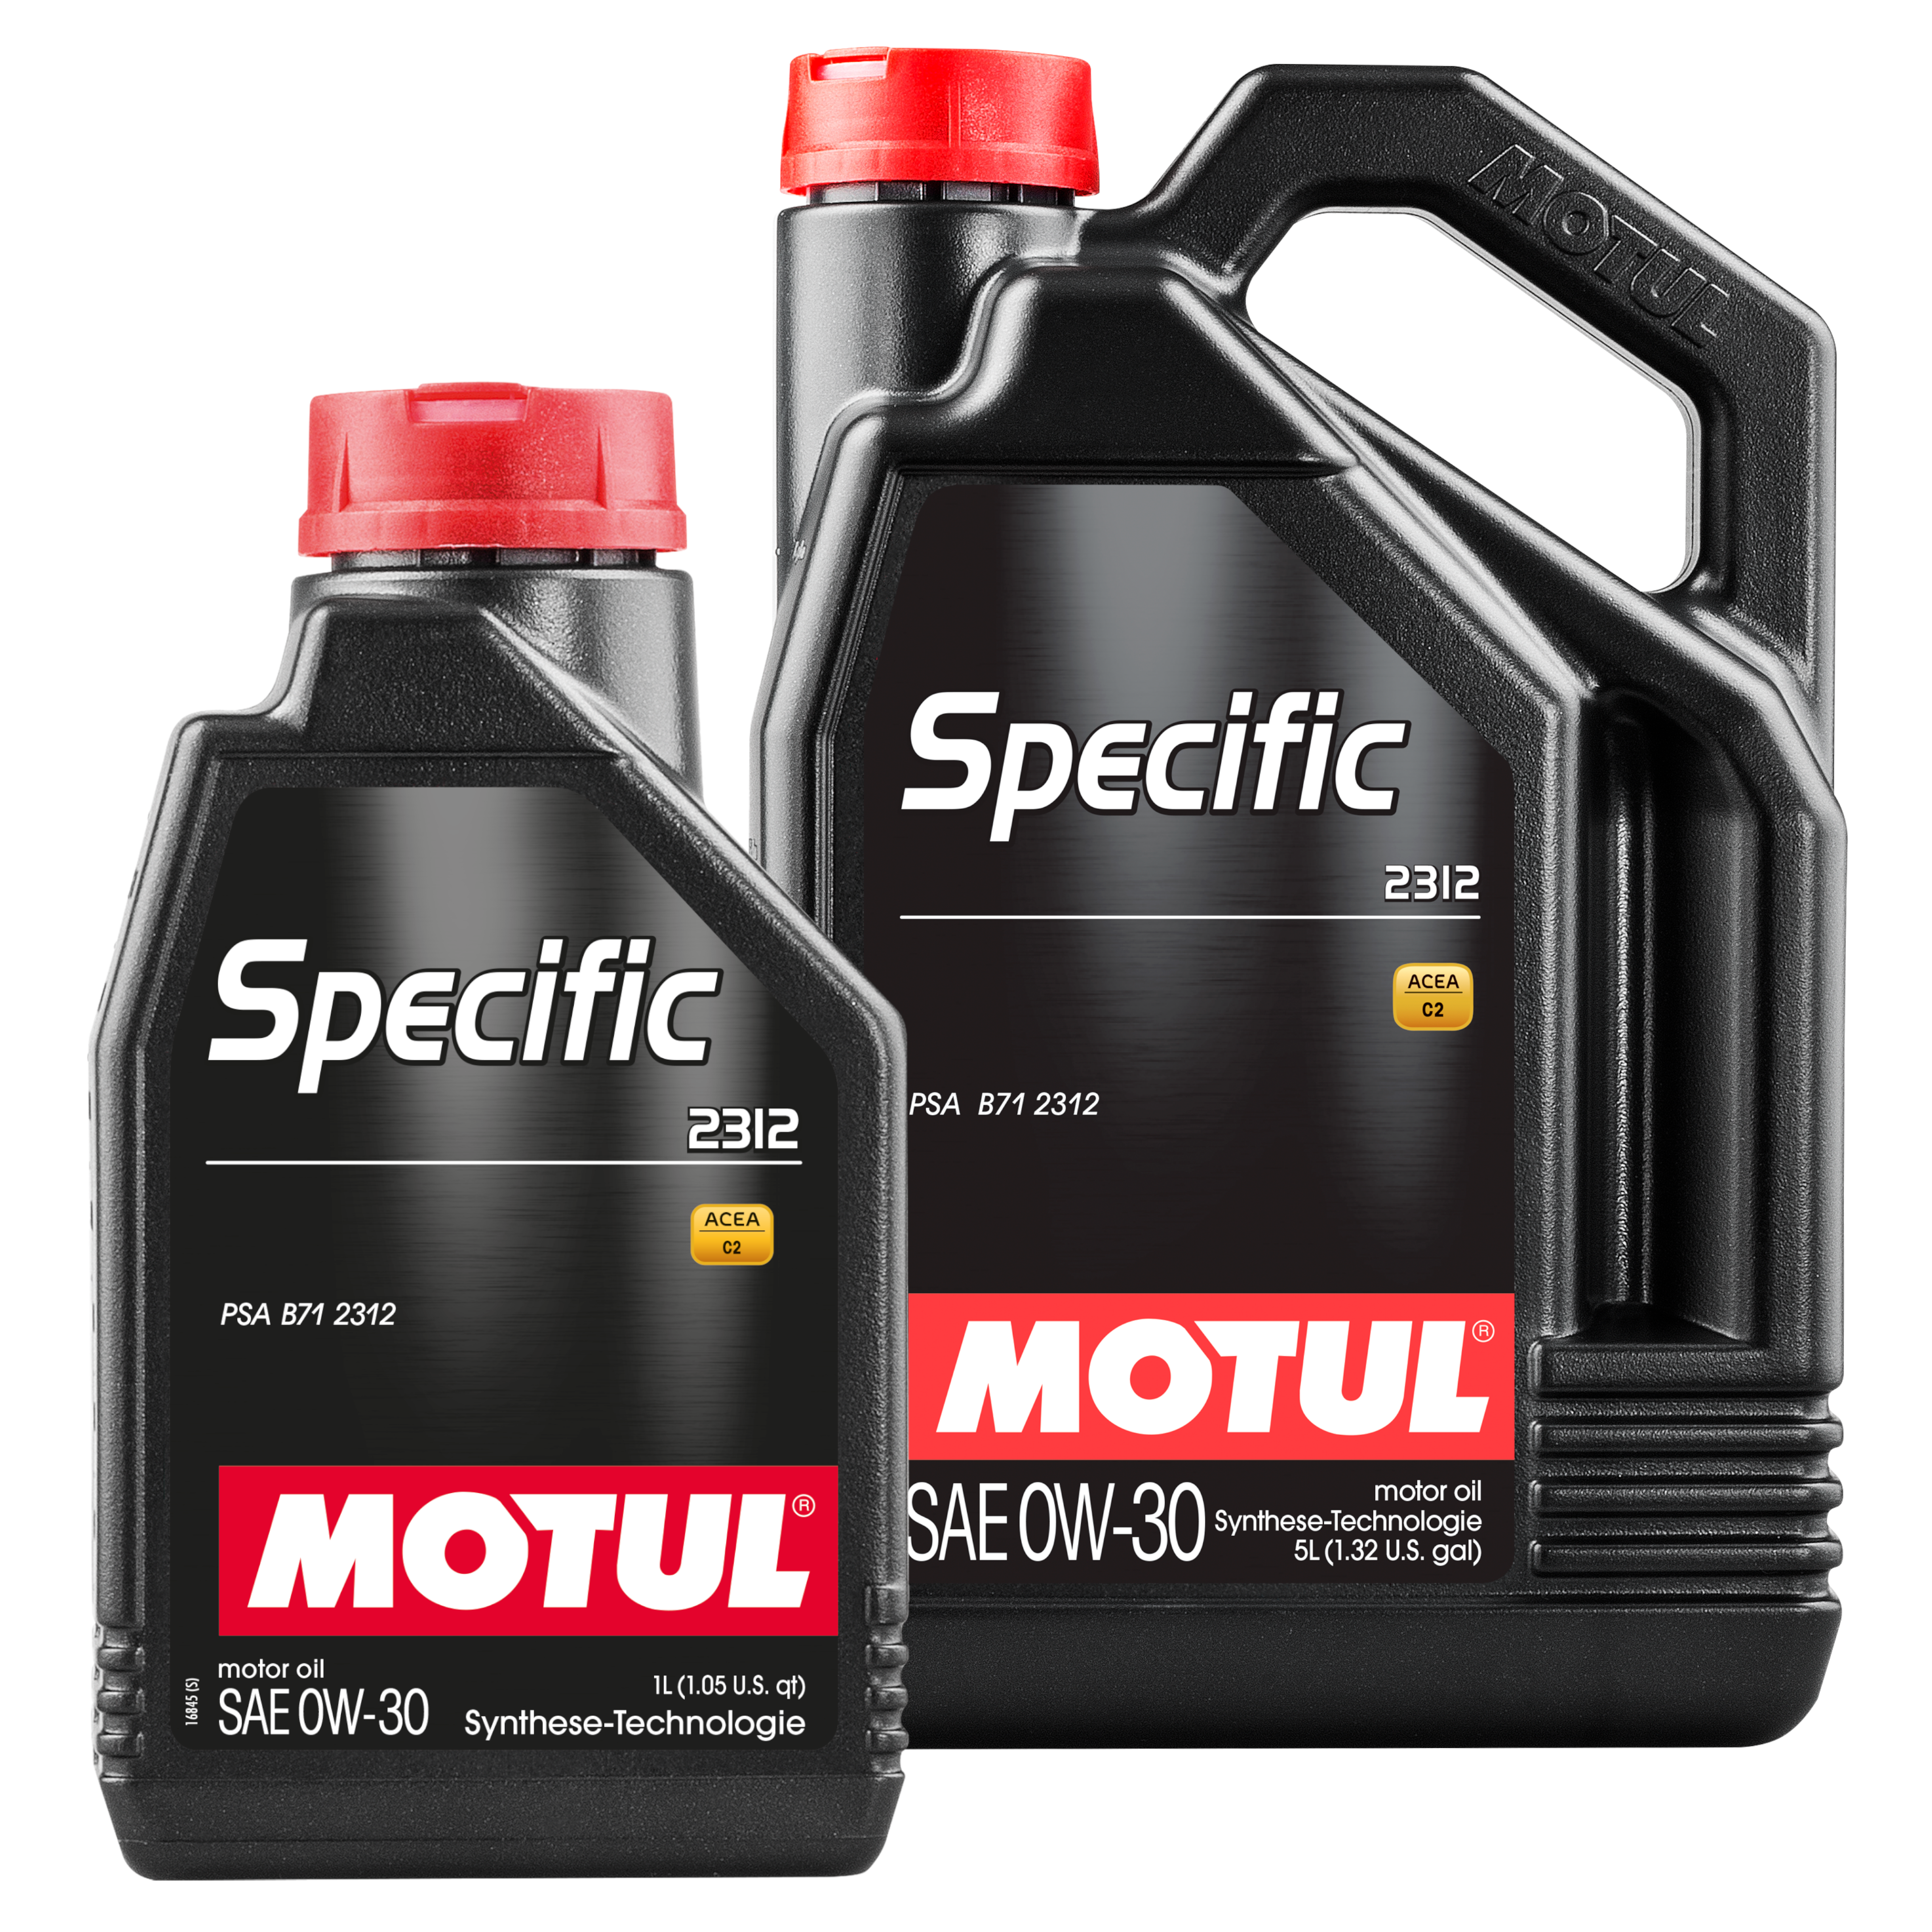 MOTUL PKW Specific 2312 0W-30 Hochleistungs Motorenöl vollsynthetisch 5+1L